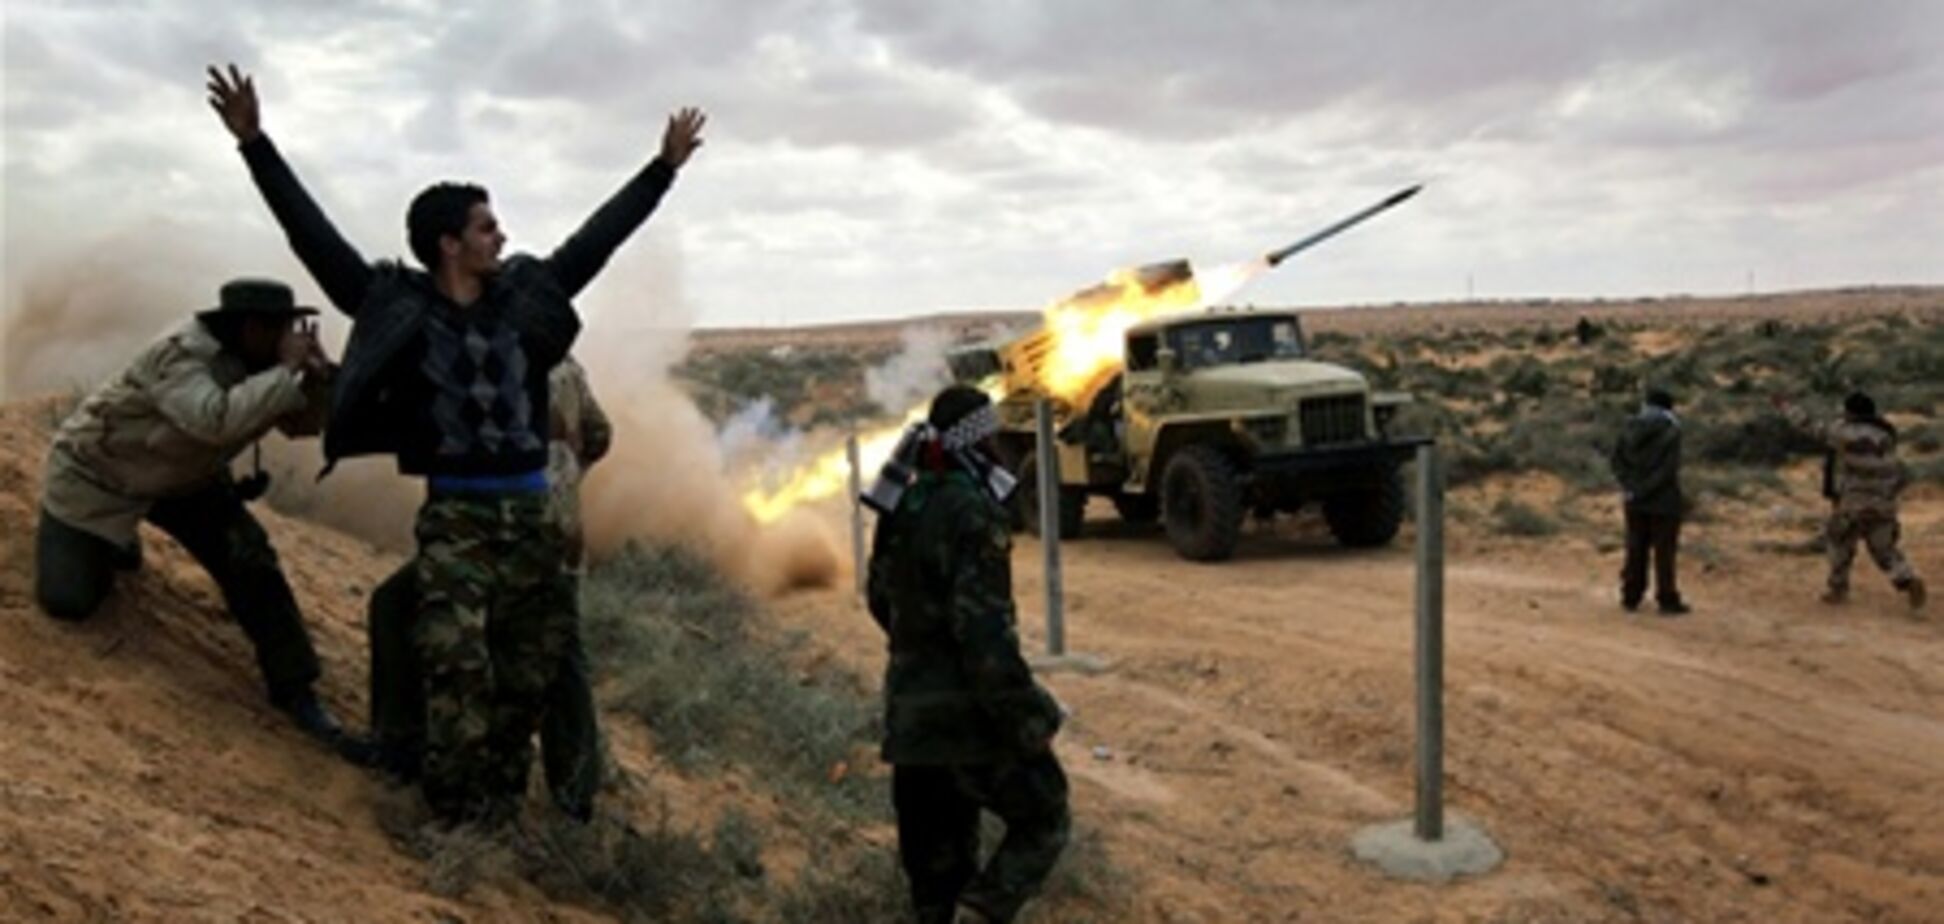 Ситуация в Ливии заходит в тупик: повстанцы подвели коалицию